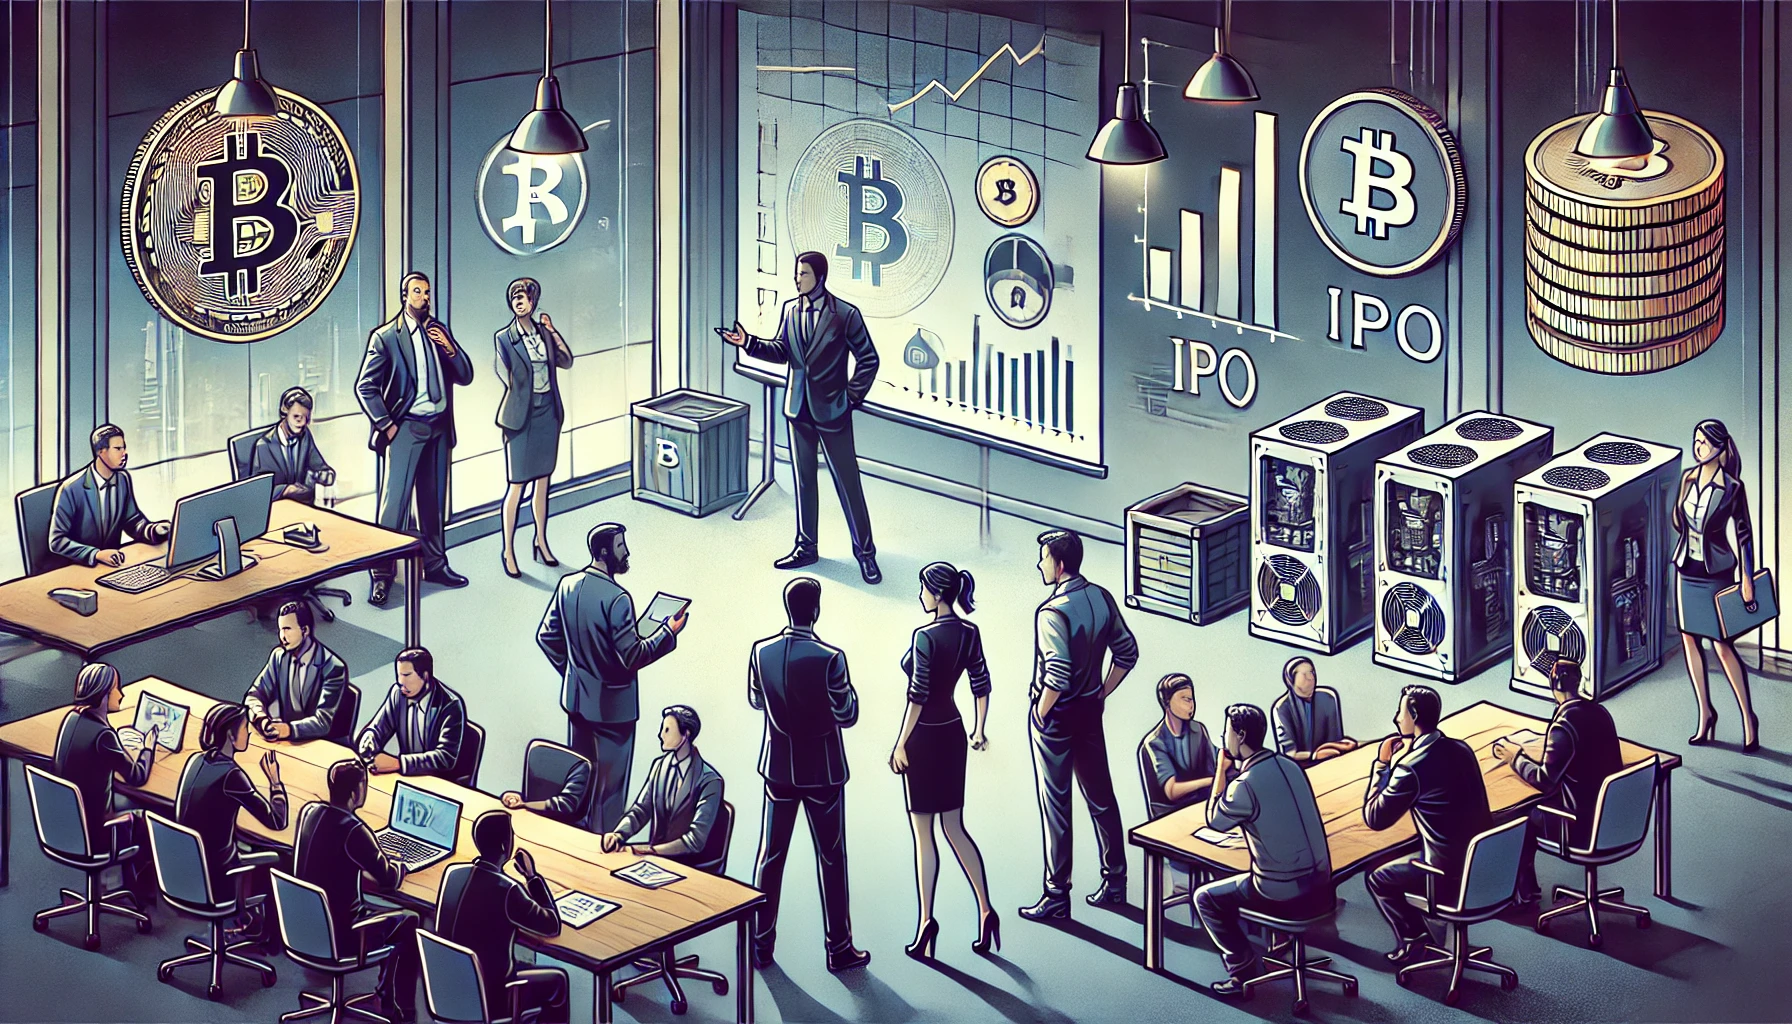 Swan Bitcoin stopt IPO plannen en vermindert personeel na stopzetten miningactiviteiten